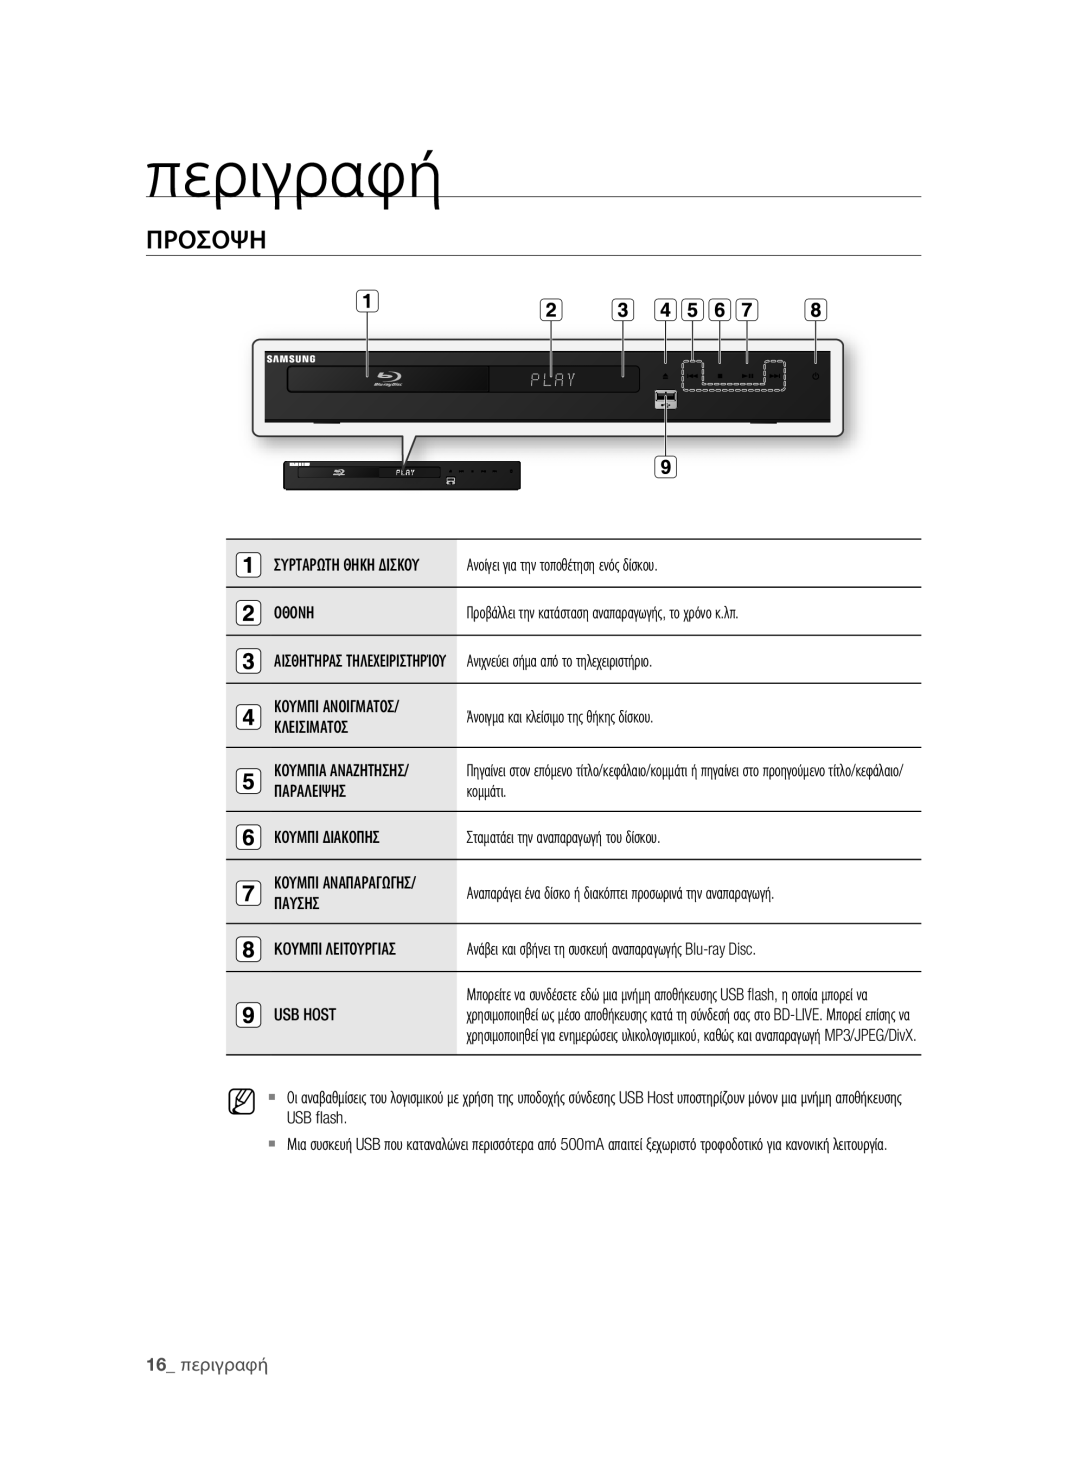 Samsung BD-P1580/EDC manual Προσοψη, 16 περιγραφή 